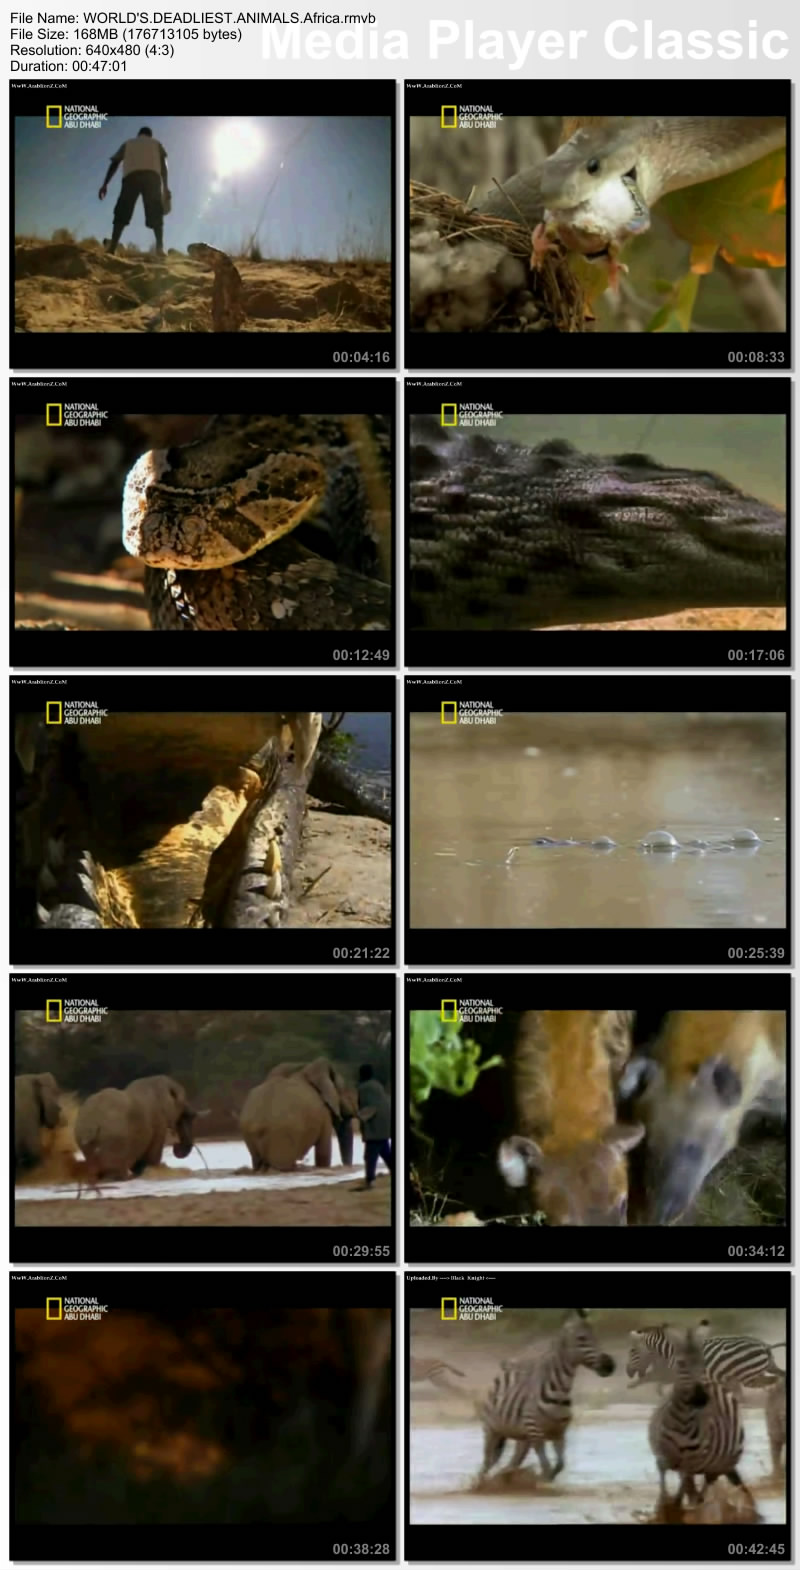 حصريا الفيلم الوثائقي أفتك حيوانات العالم - أفريقيا بمساحة 168 ميجا واعلى جودة وعلى اكثر من سيرفر Thumbs16